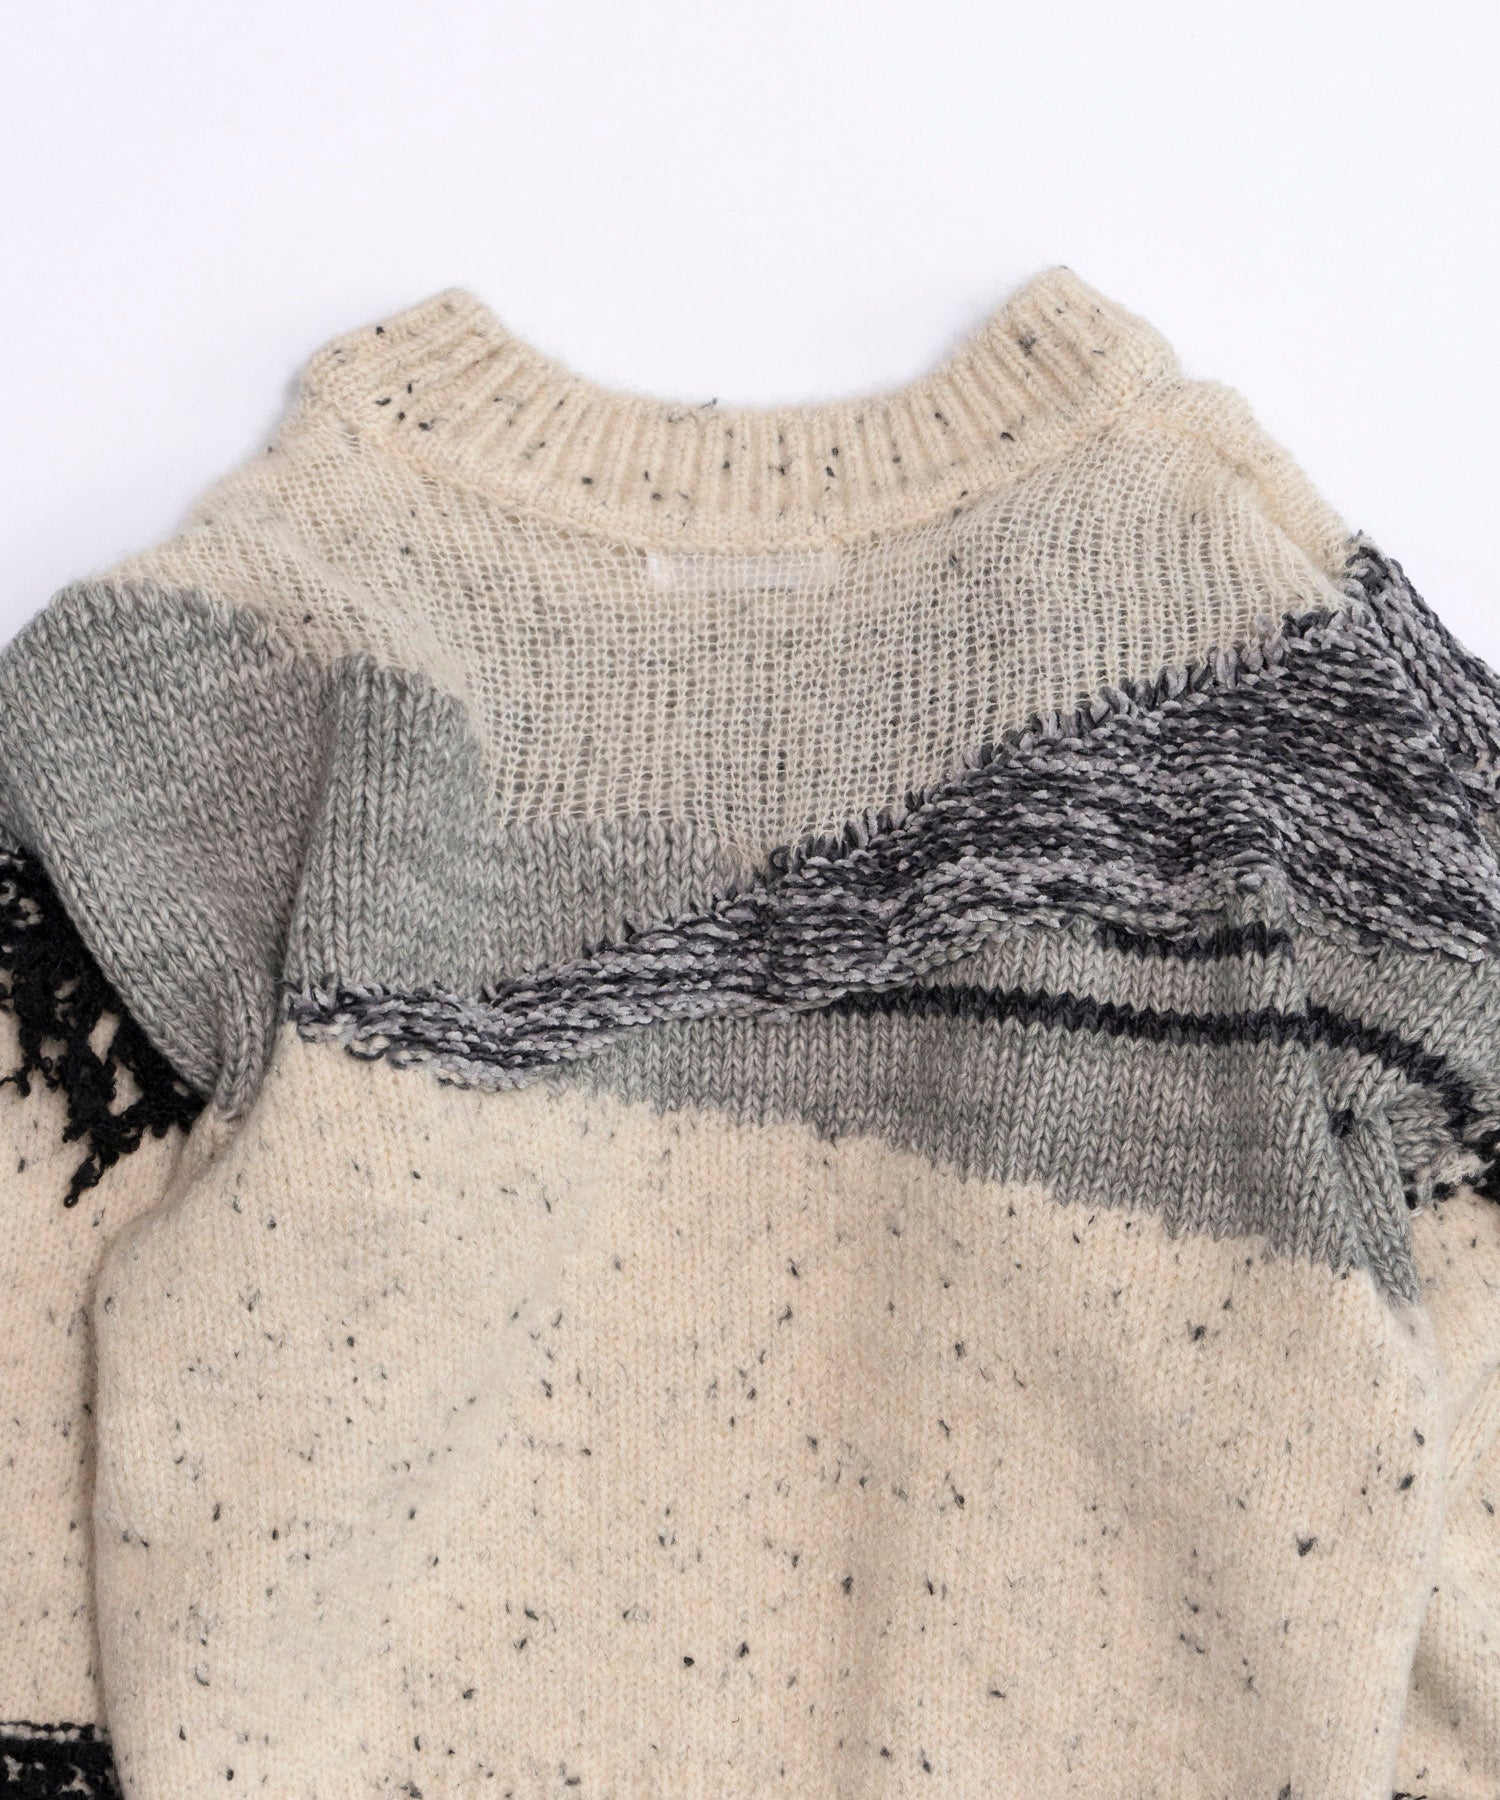 Mix Yarn Fringe Knit